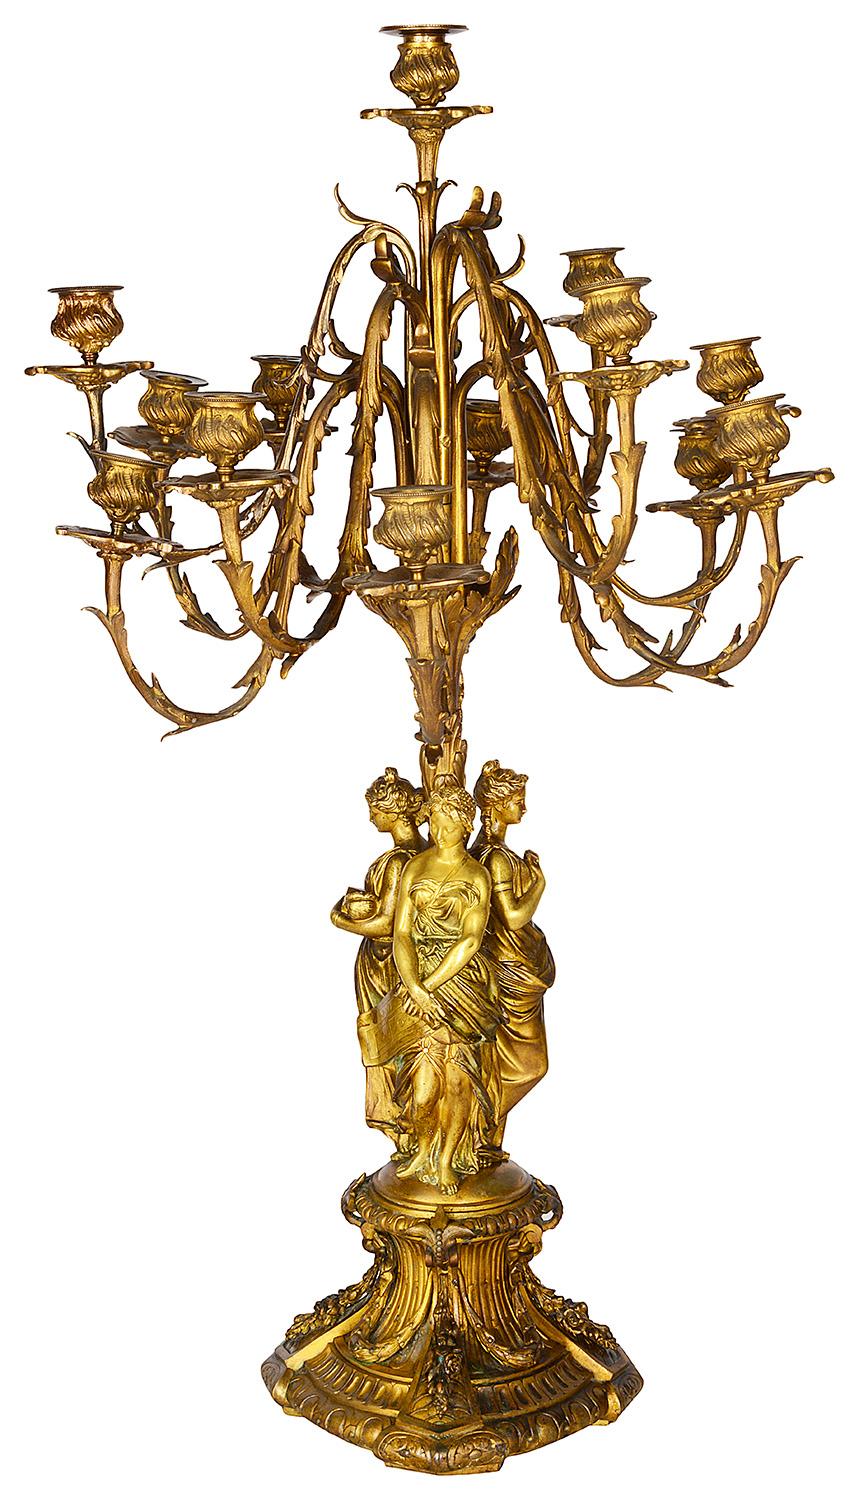 Ein sehr beeindruckendes und hochwertiges Paar vergoldeter Ormolu-Kandelaber mit 13 Zweigen aus dem frühen 19. Jahrhundert, jeweils mit wundervoller Blattdekoration, getragen von drei klassischen Jungfrauen, die die Künste der Malerei, Bildhauerei